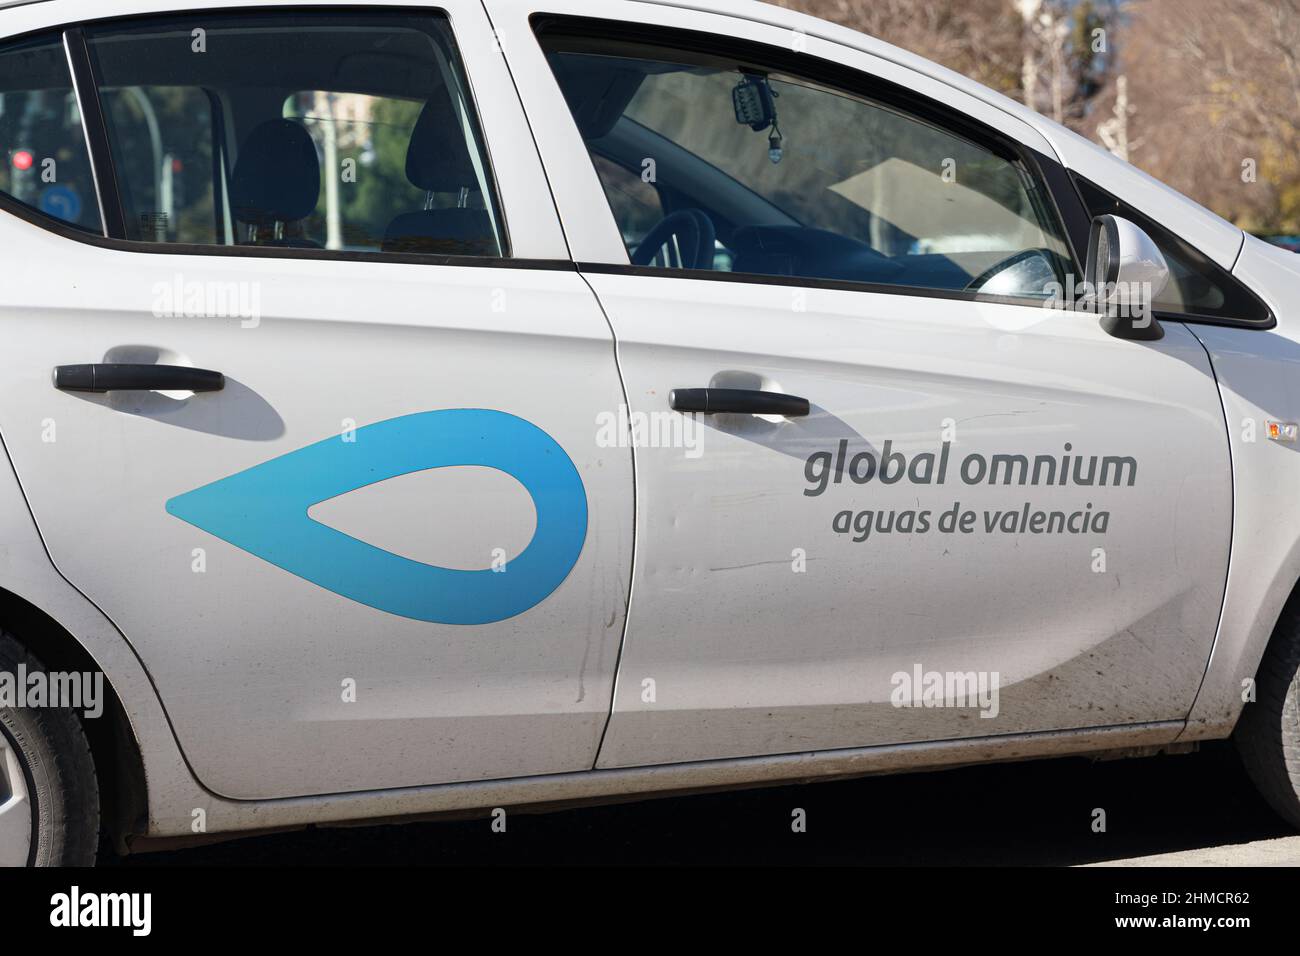 VALENCIA, SPANIEN - 02. FEBRUAR 2022: Global Omnium ist ein auf den Integrierten Wasserkreislauf spezialisiertes Unternehmen Stockfoto